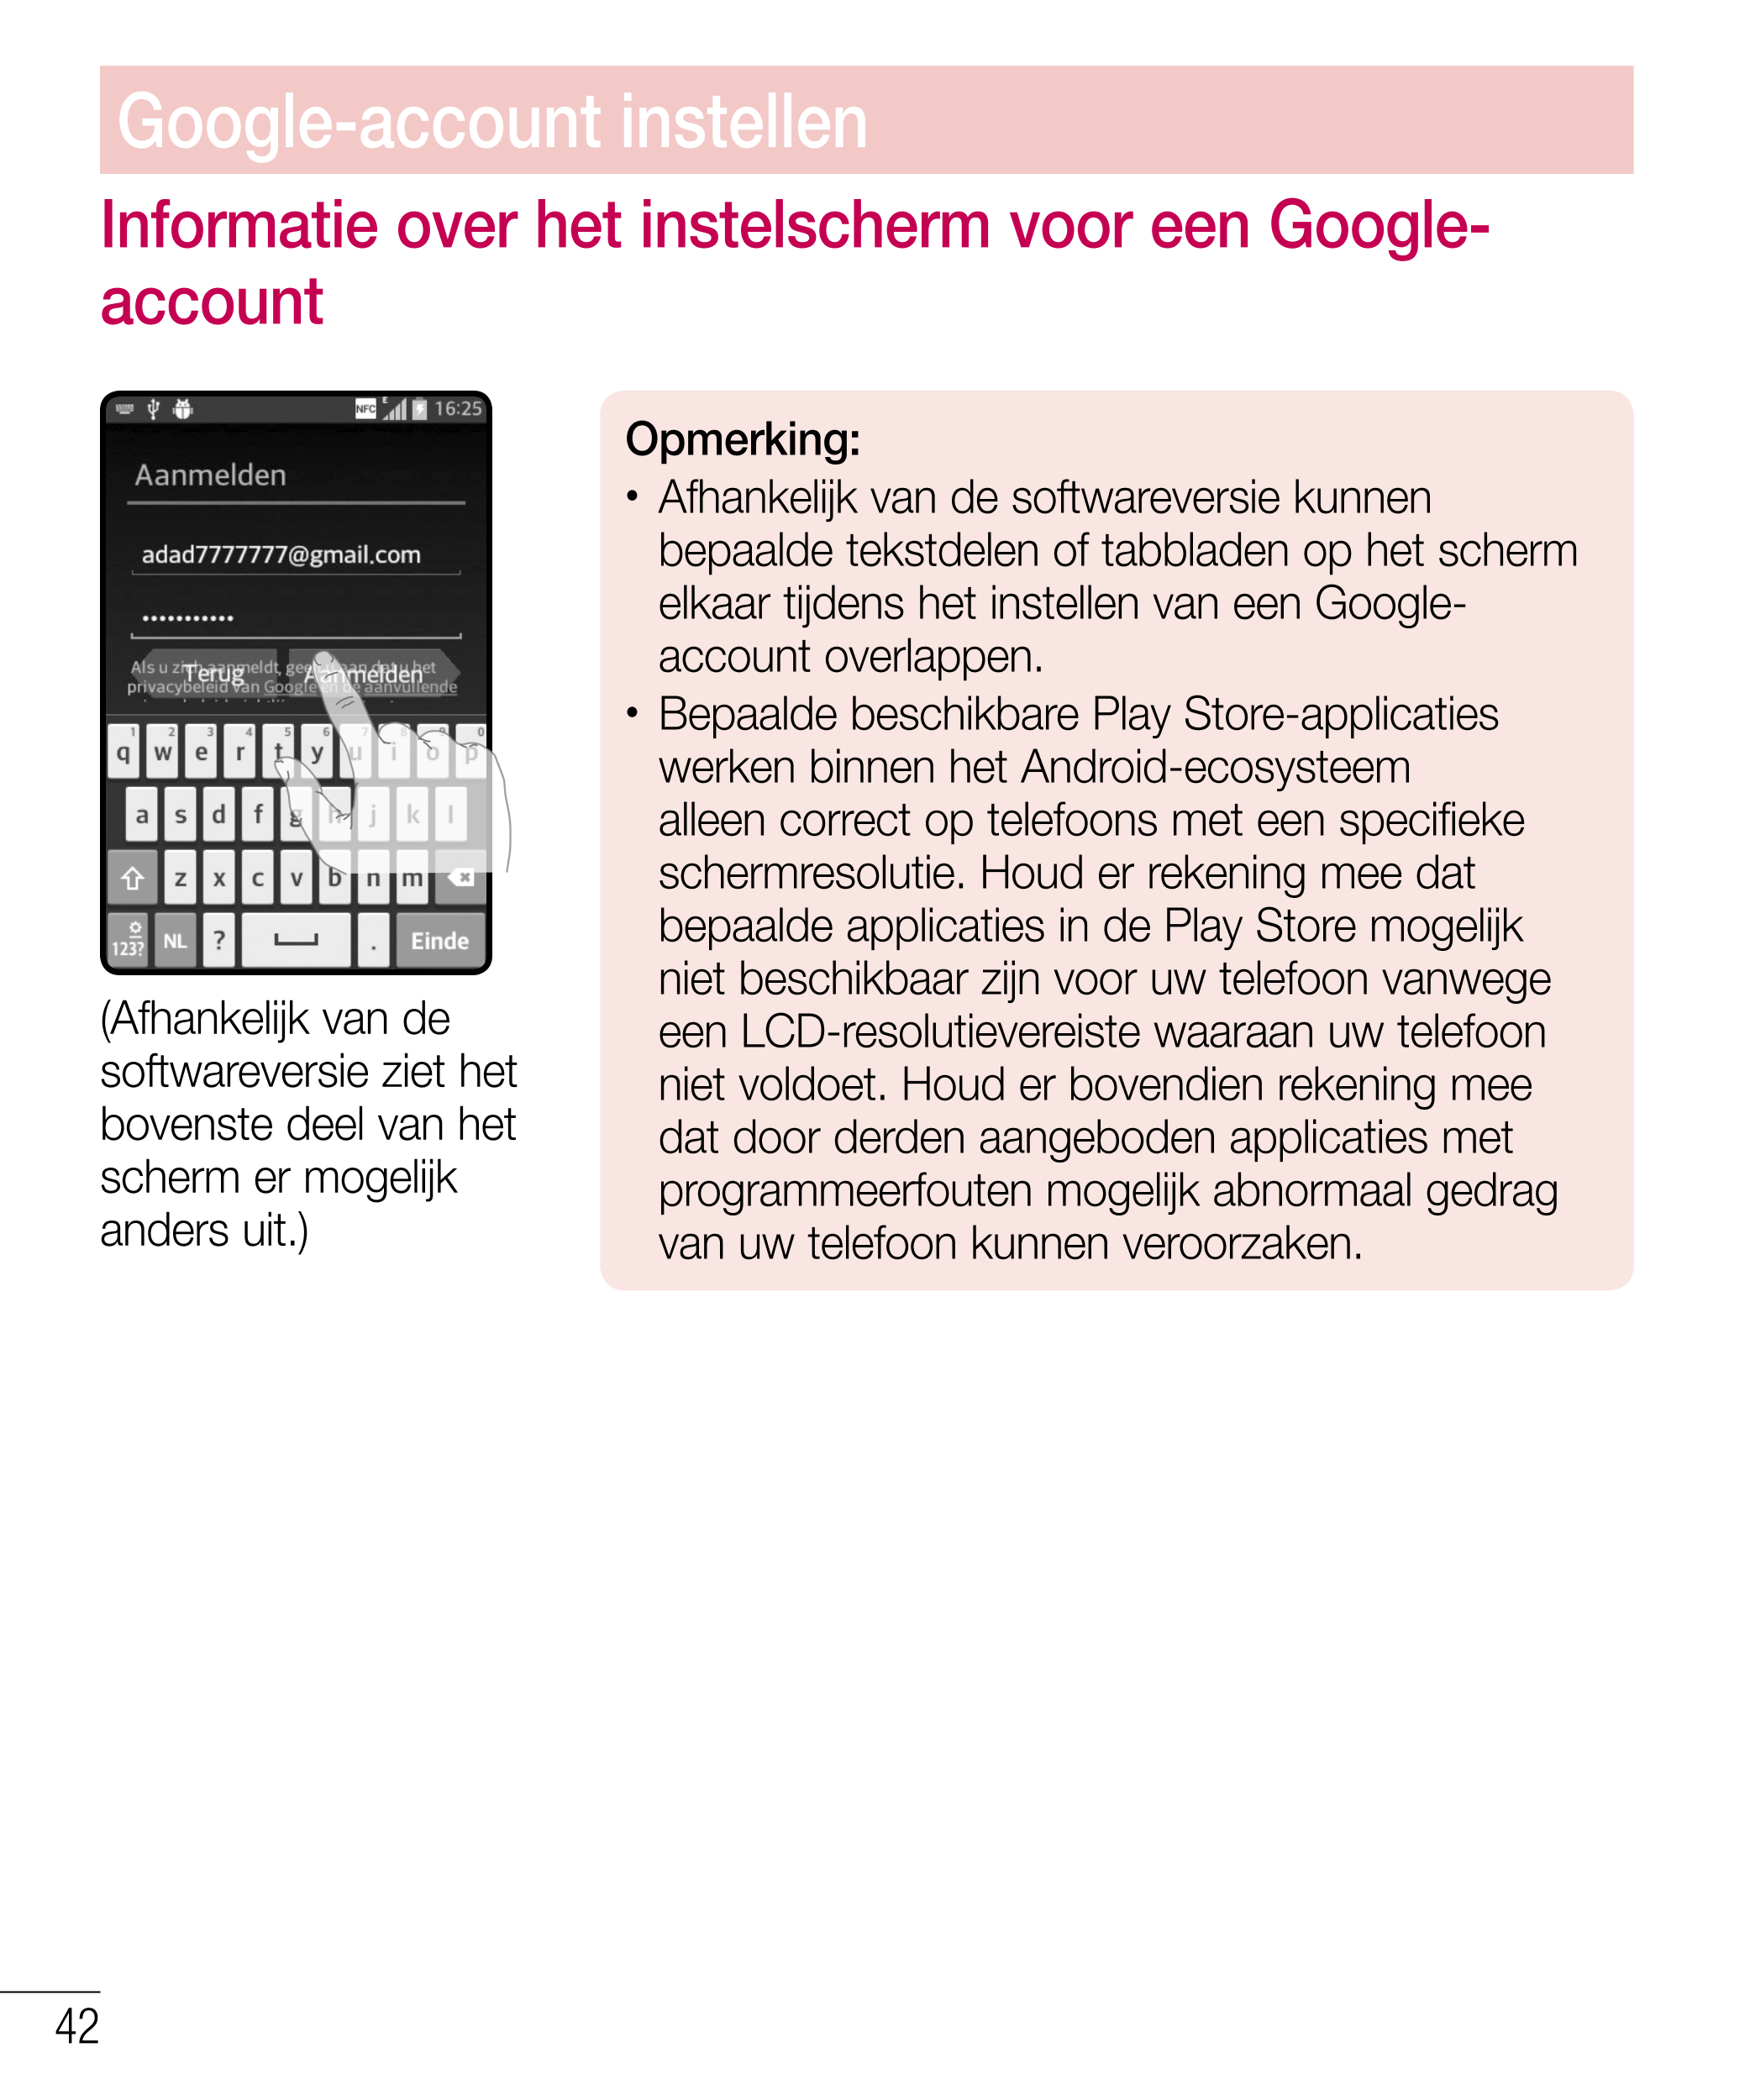 Google-account instellen
Informatie over het instelscherm voor een Google-
account
Opmerking: 
•  Afhankelijk van de softwarever